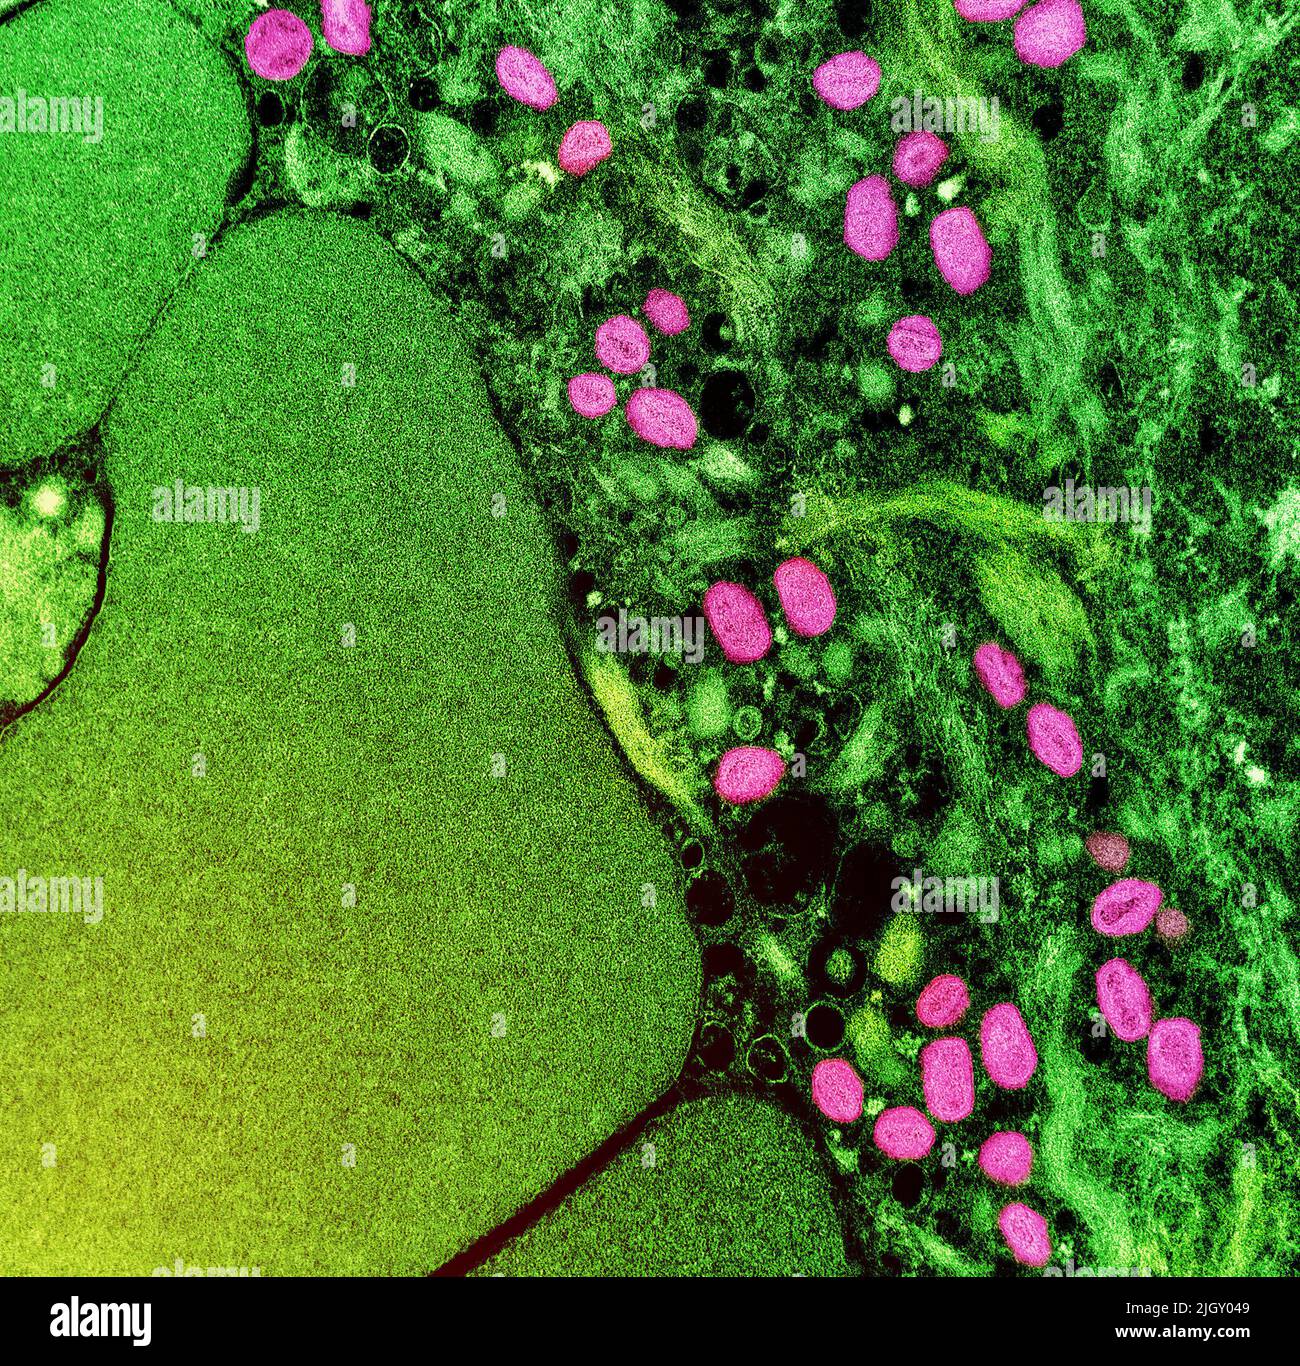 Viruela del simio. Micrografía electrónica de transmisión coloreada de partículas maduras del virus Nipah extracelular (rojo) cerca de la periferia de una célula VERO infectada (azul y verde). Imagen capturada en la Instalación Integrada de Investigación NIAID en Fort Detrick, Maryland. NIAID La viruela del simio es una enfermedad viral infecciosa que puede ocurrir en los seres humanos y en algunos otros animales.Los síntomas incluyen fiebre, ganglios linfáticos inflamados y una erupción que forma ampollas y luego costras. El tiempo transcurrido desde la exposición hasta el inicio de los síntomas varía de 5 a 21 días. La duración de los síntomas suele ser de 2 a 4 semanas. Foto de stock